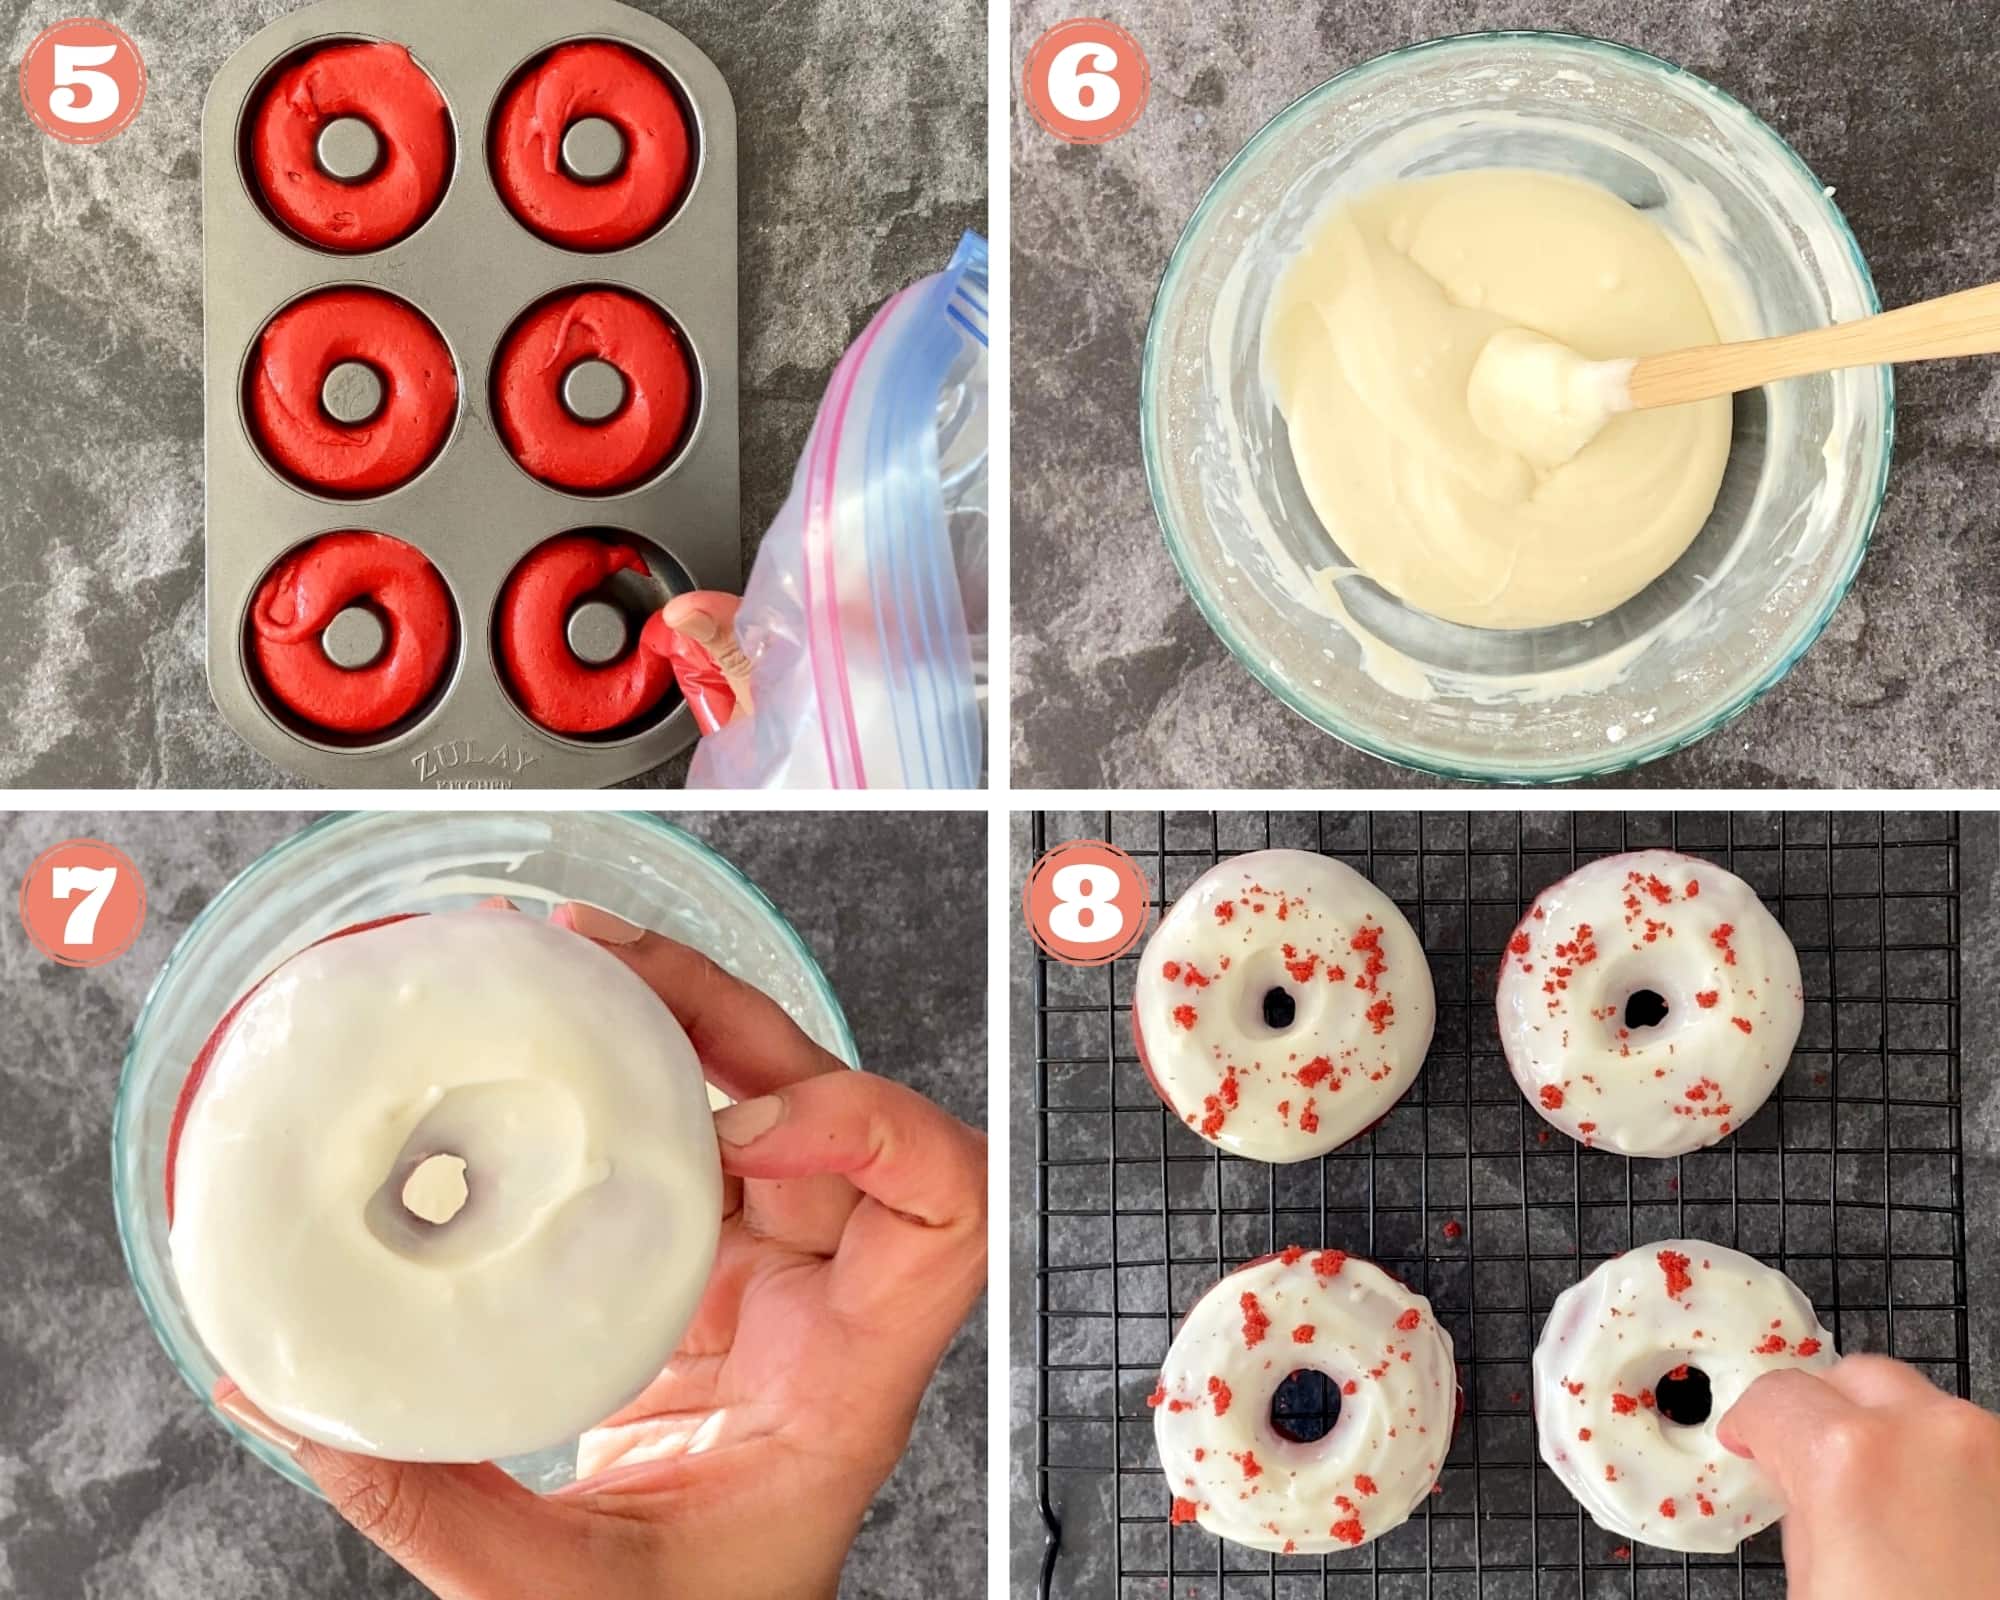 Steps 5 through 8 for making Red Velvet Donuts